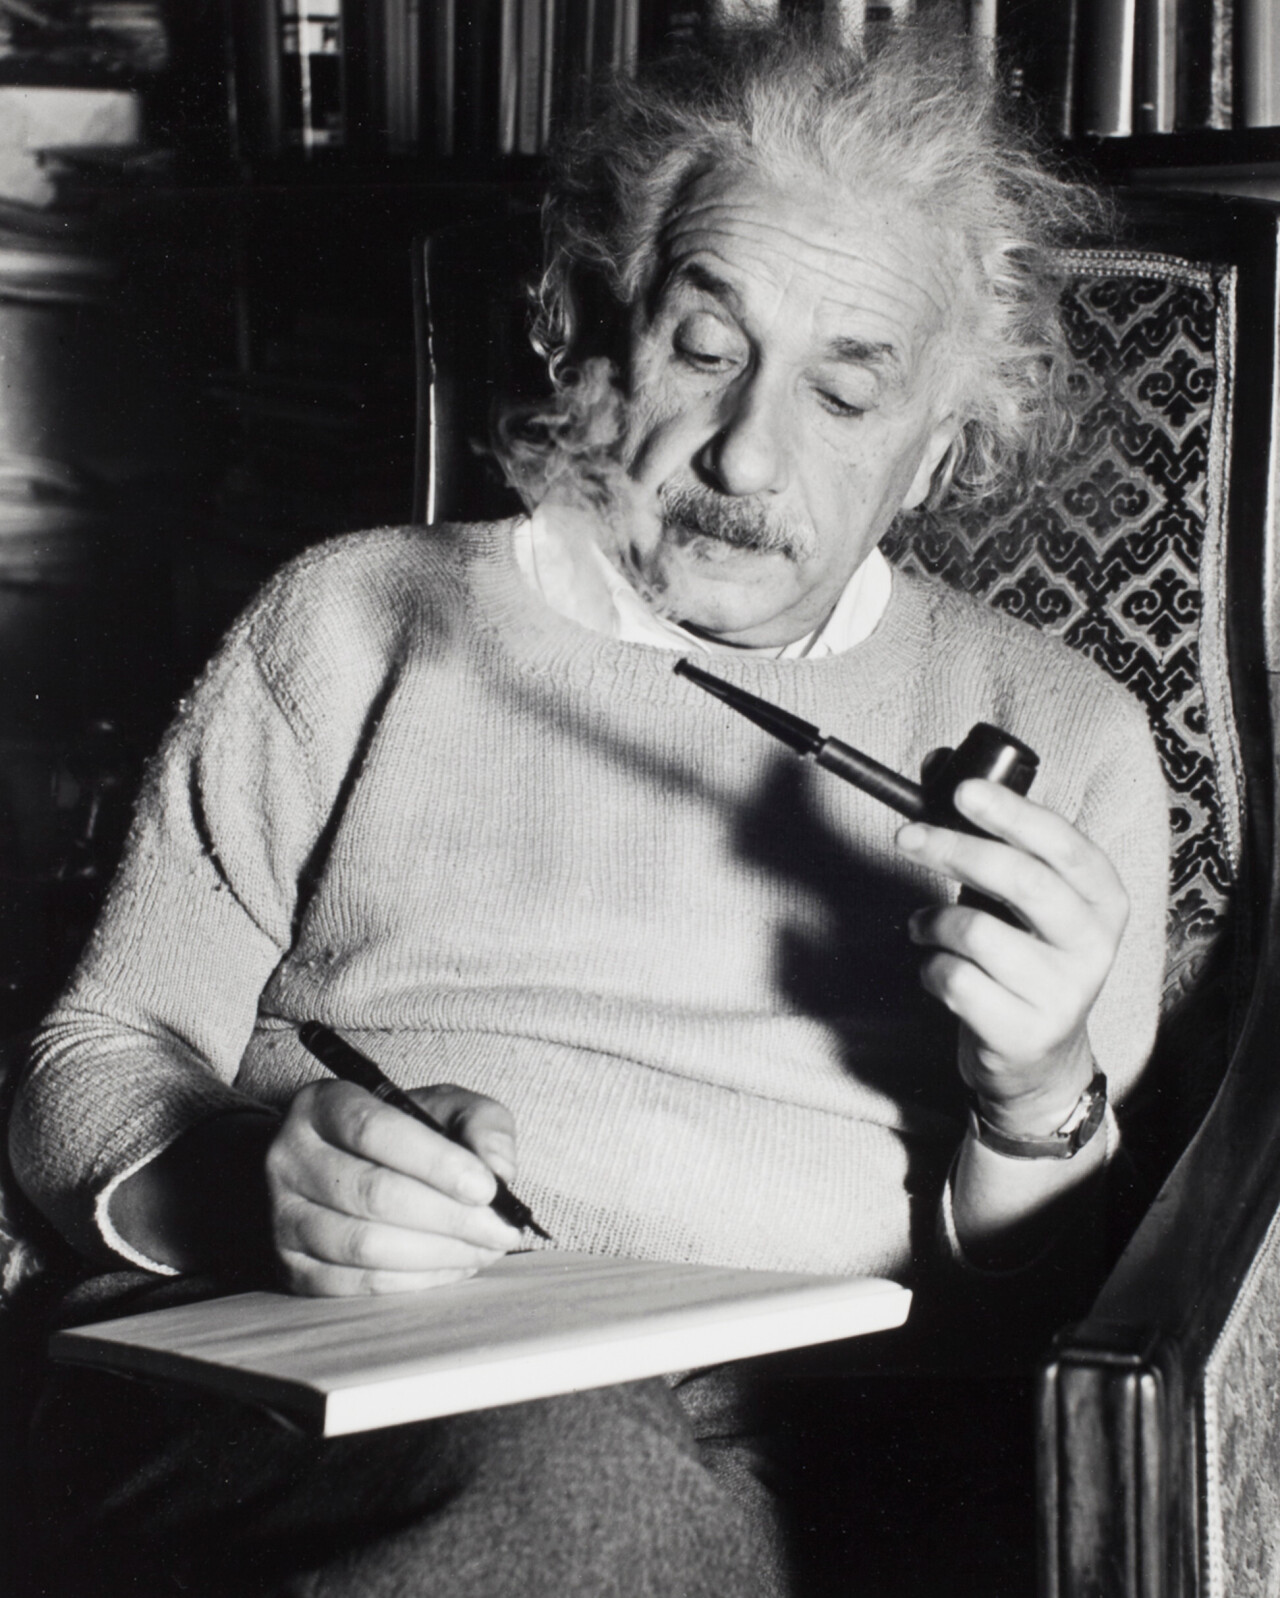 Альберт Эйнштейн за работой, Принстон, 1940 г. Фотограф Люсьен Айгнер